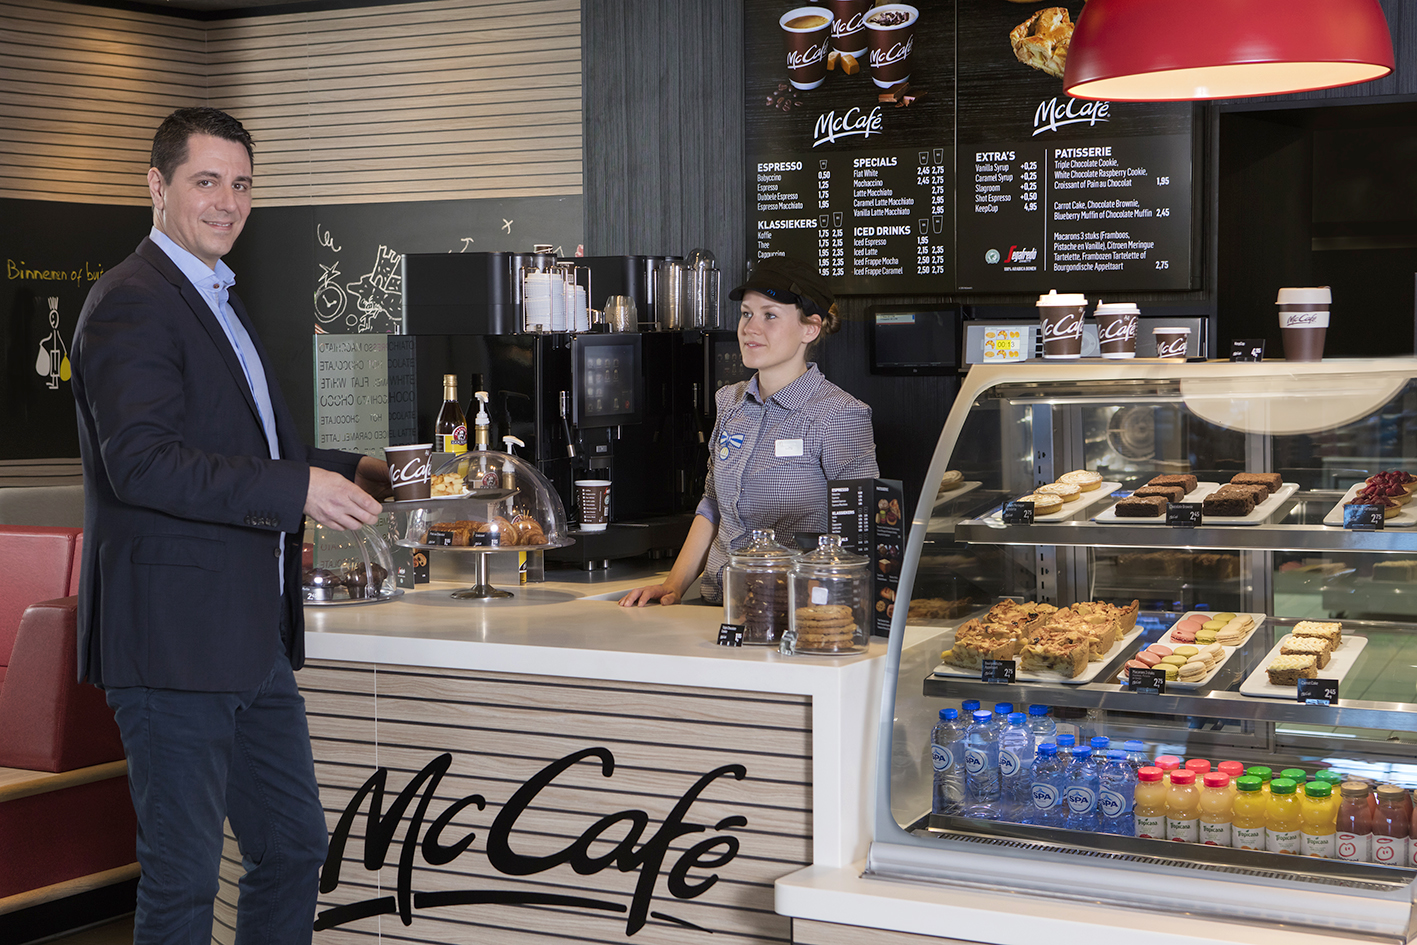 De eerste resultaten van de nieuwe Salad Bar en het McCafeÌ in het restaurant in Hoorn zijn positief, aldus Manu Steijaert, algemeen directeur McDonald’s Nederland. Bron: FranchiseFormules.NL